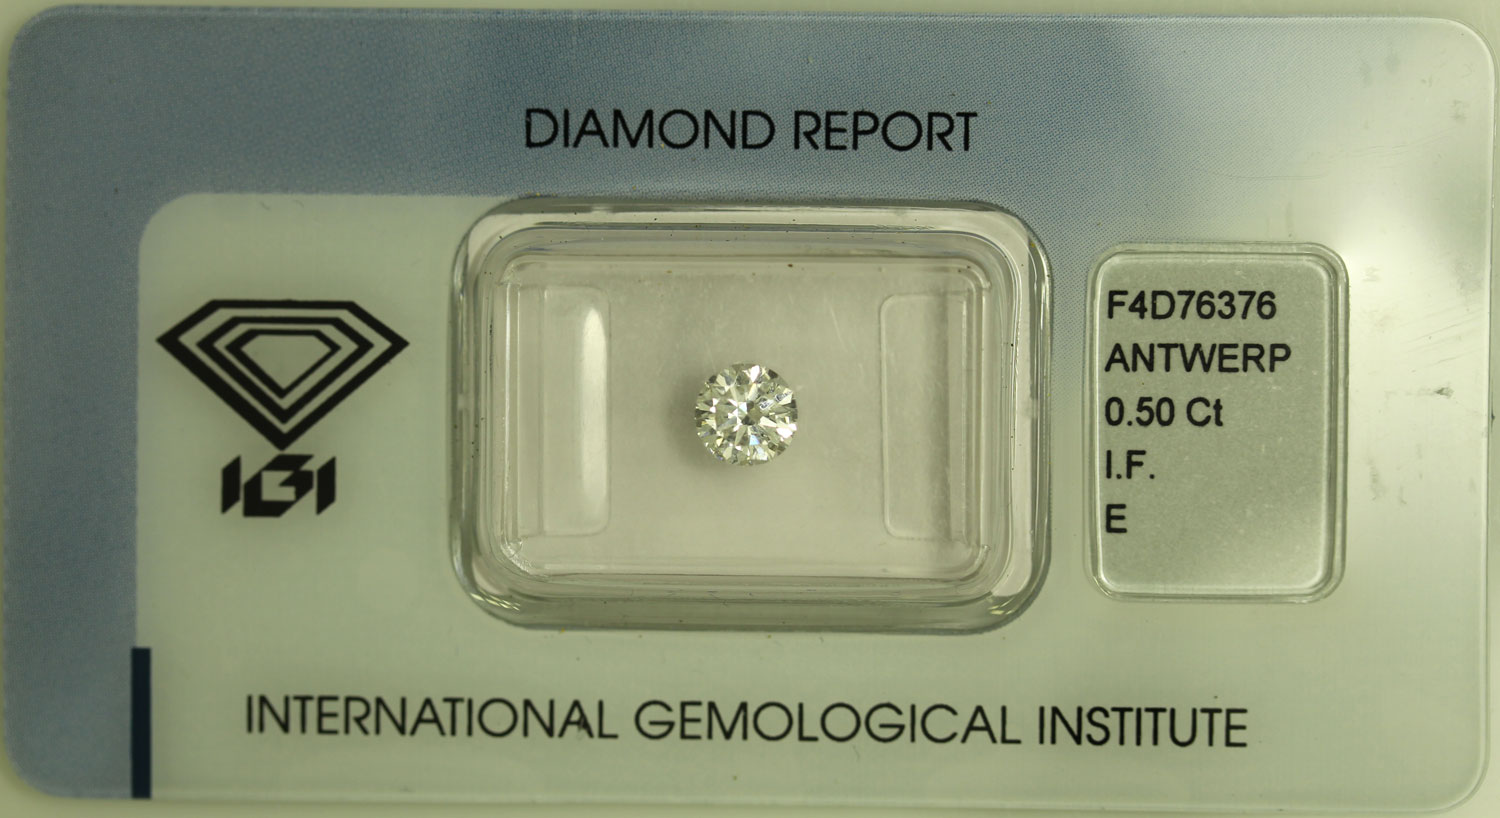 Diamante Rotondo a Brillante di ct. 0.50- Purezza IF- Colore E - Certificato IGI Anversa 